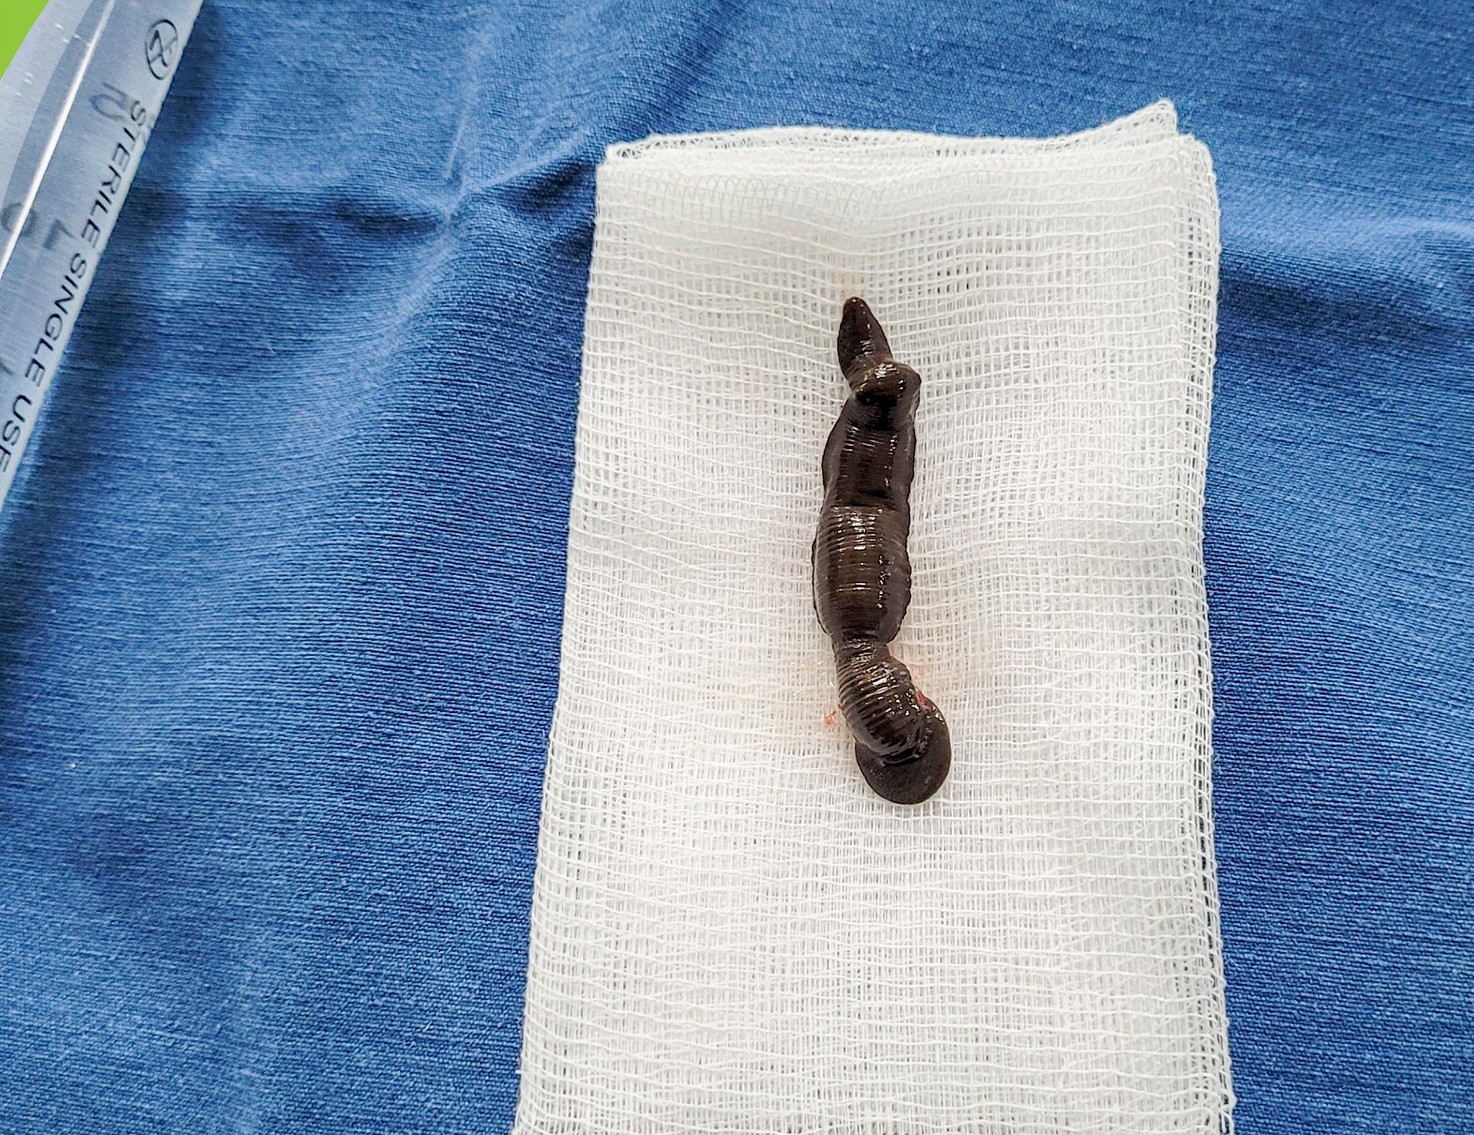 Con đỉa dài 4cm được các bác sĩ phẫu thuật nội soi gắp ra từ khí quản bệnh nhi